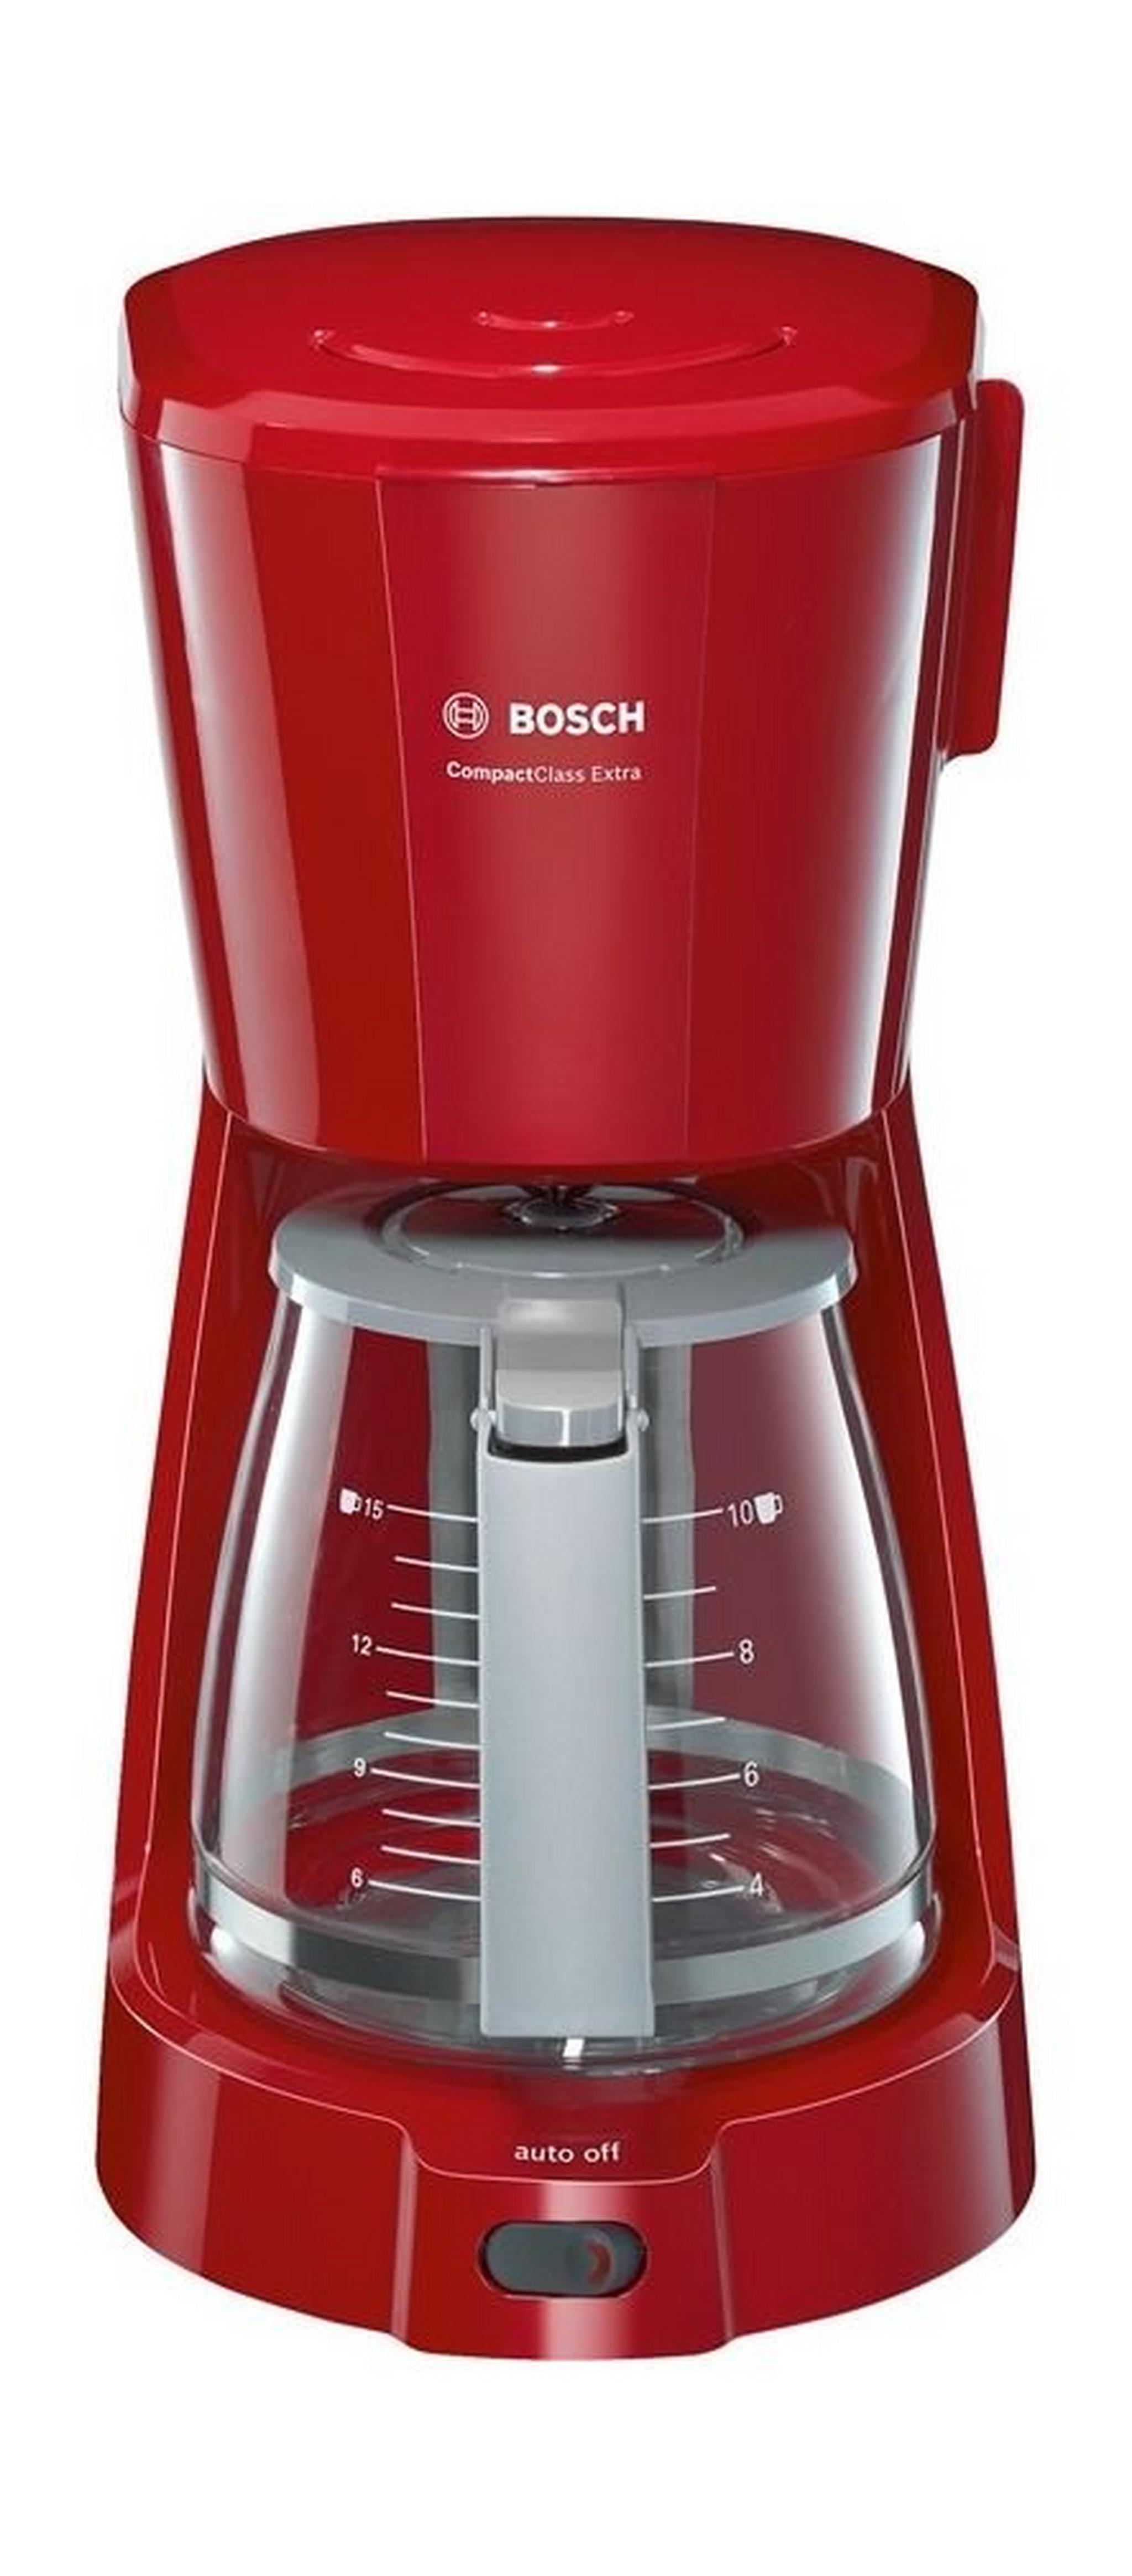 ماكينة تحضير القهوة فلتر كومباكت كلاس اكسترا من بوش، قدرة 1100 وات، سعة 1.25 لتر، TKA3A034GB – احمر